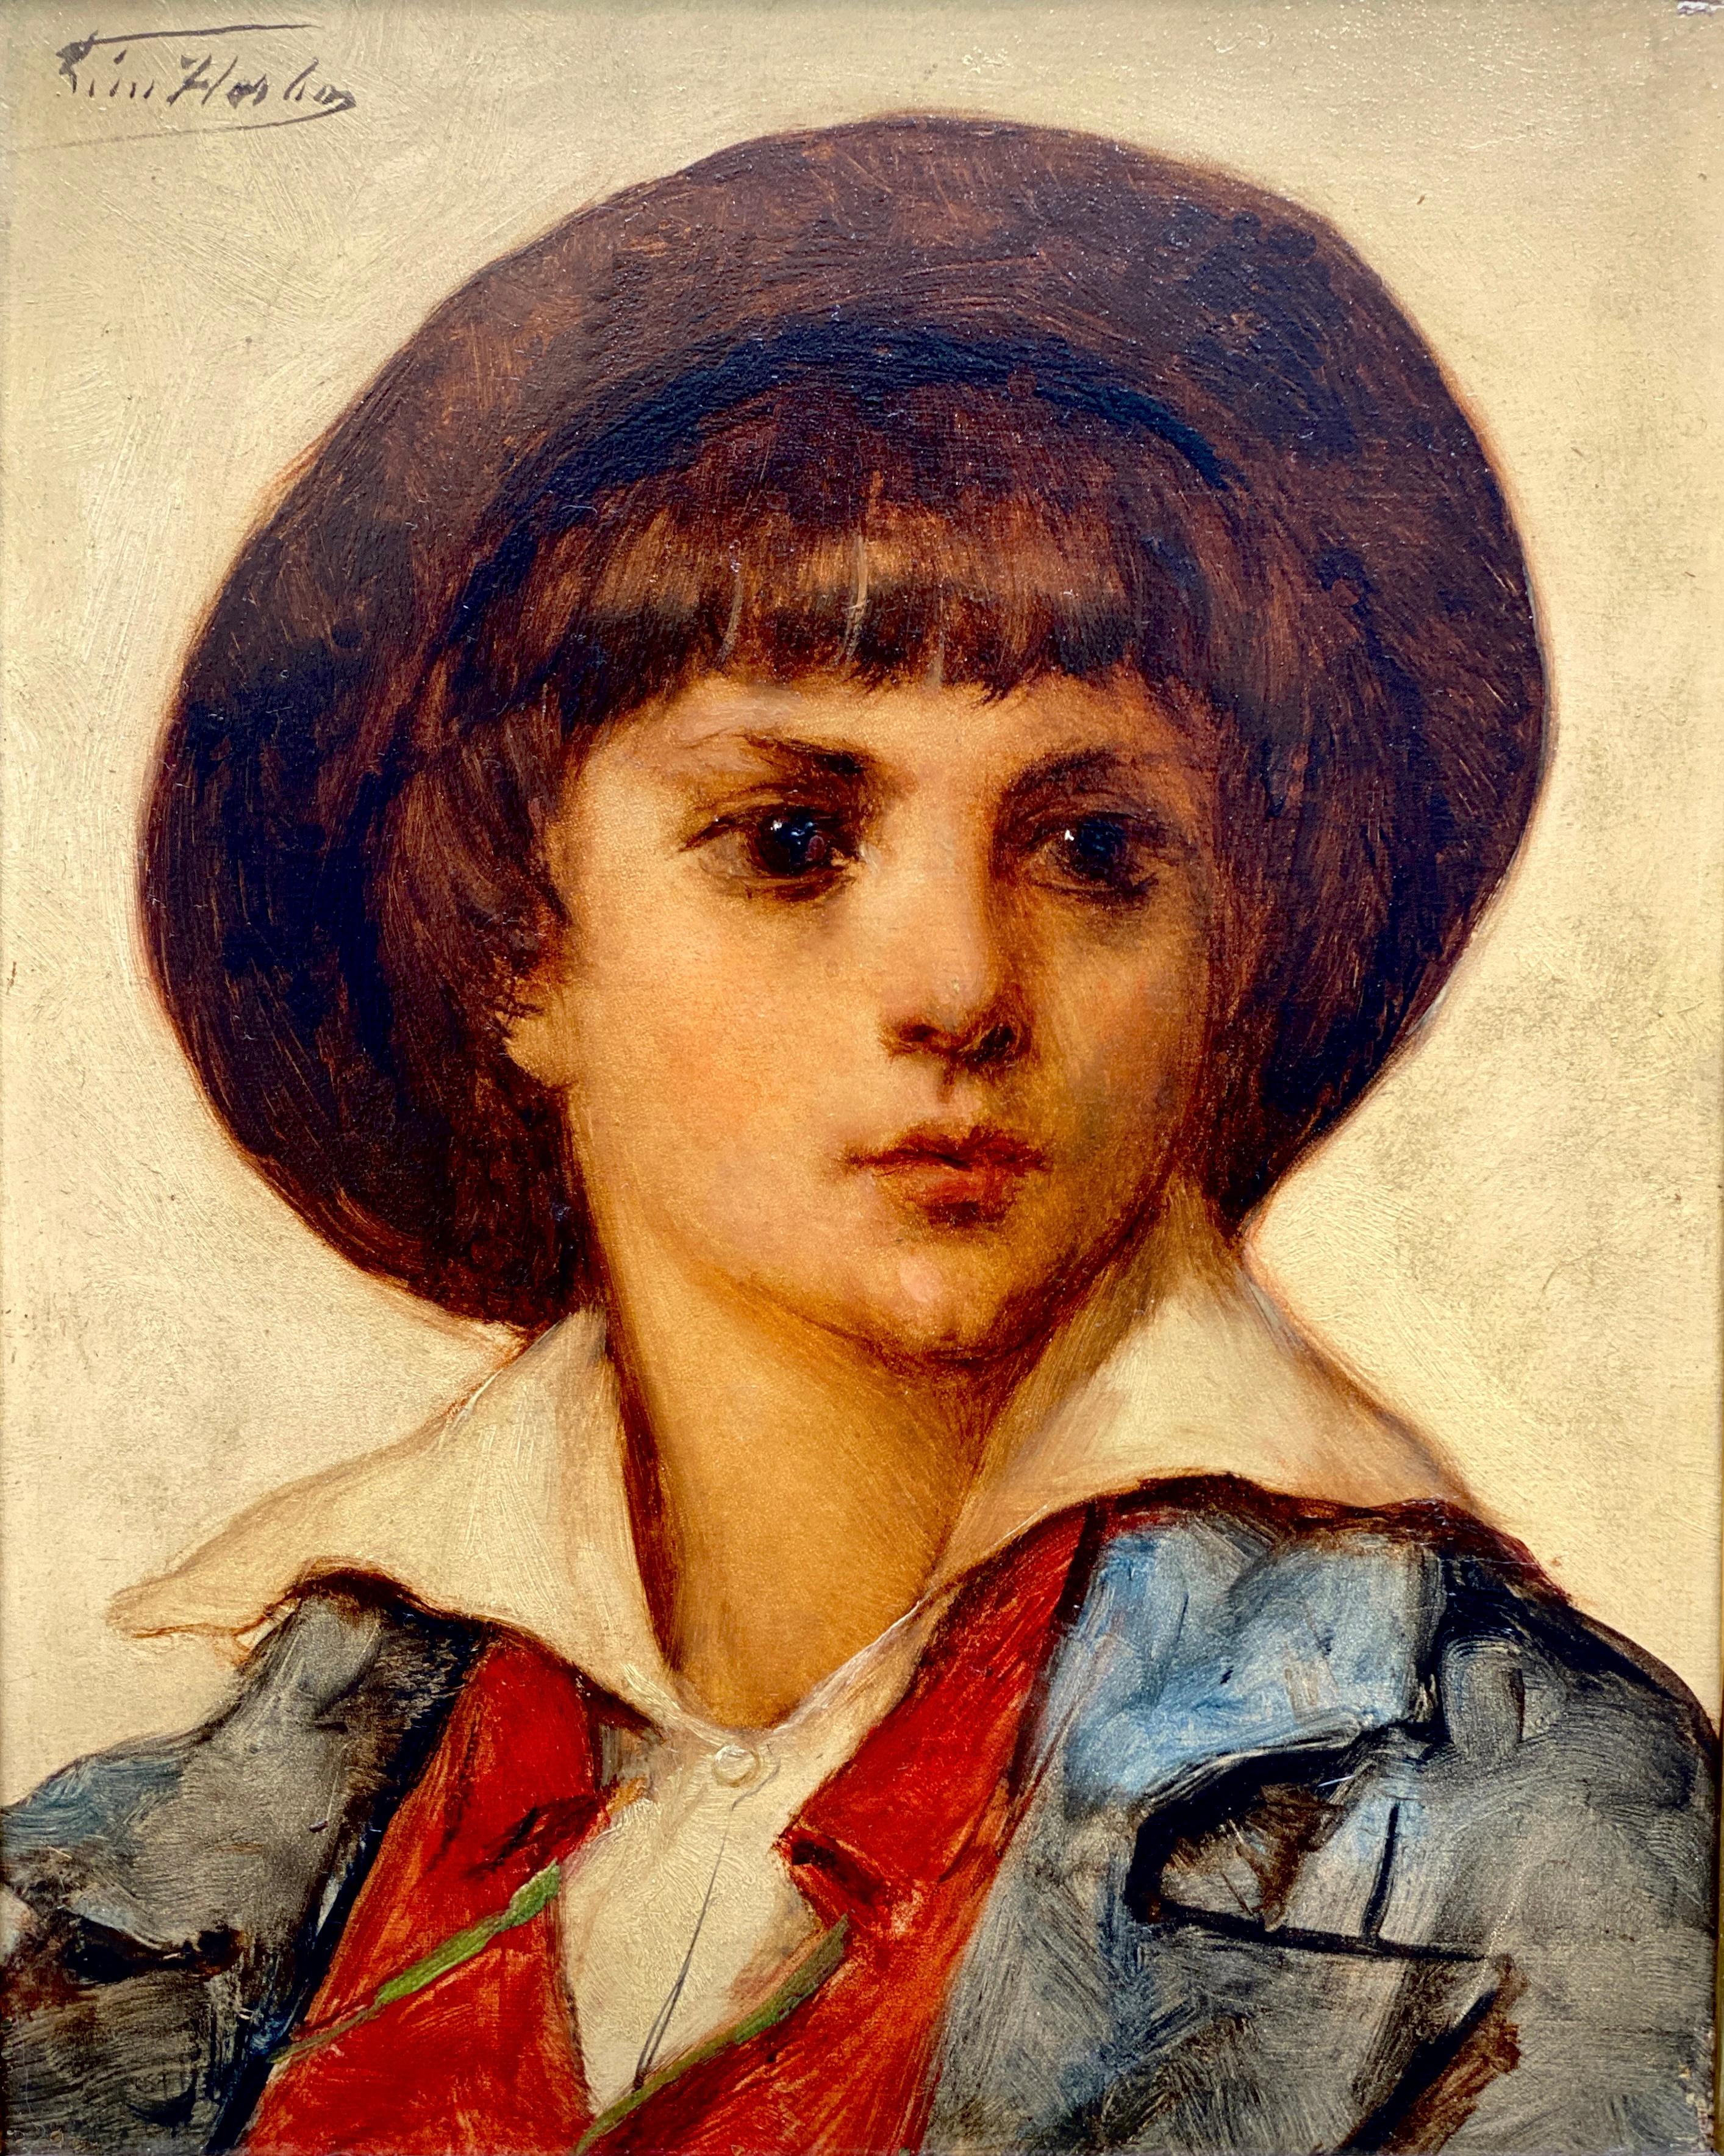 Léon Herbo, Templeuve 1850 – 1907 Ixelles, Belgian Painter, 'Portrait of a Boy' - Painting by Leon Herbo